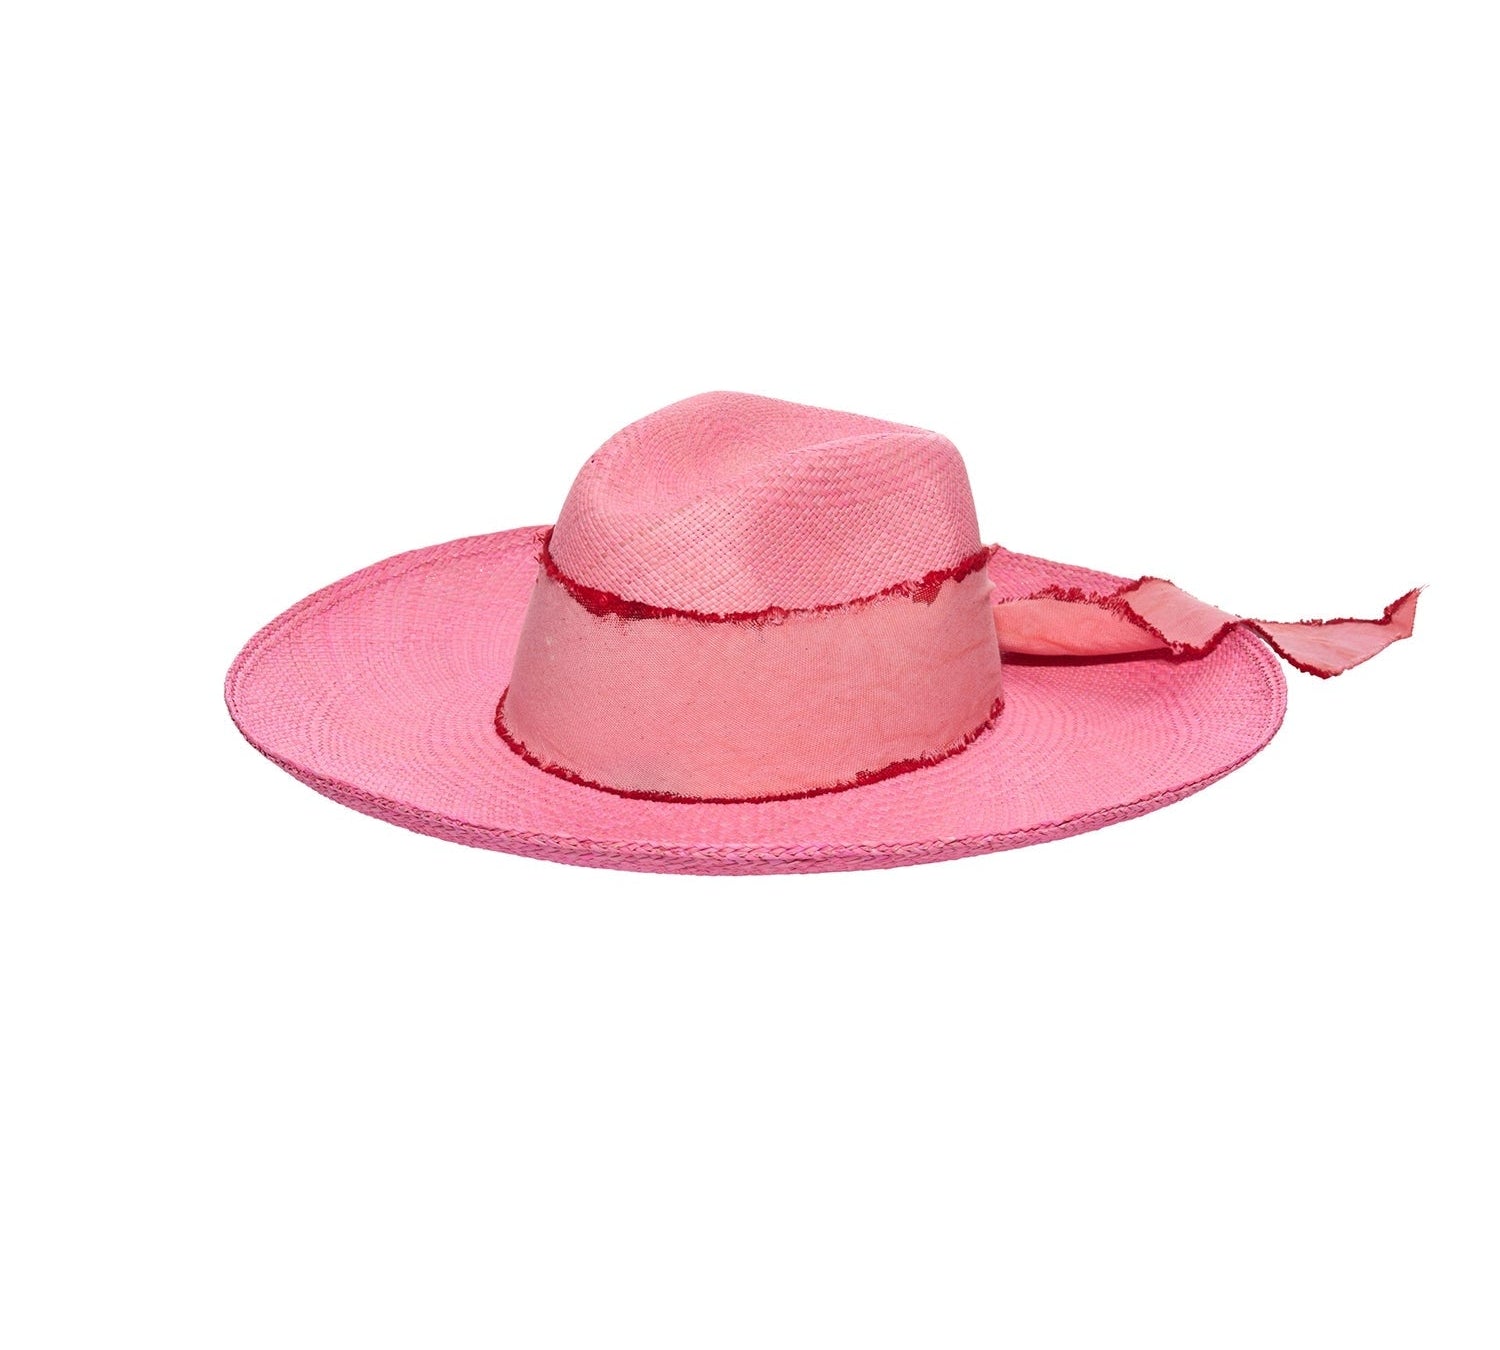 Izu - Clasico Custom Initials Hat artesano